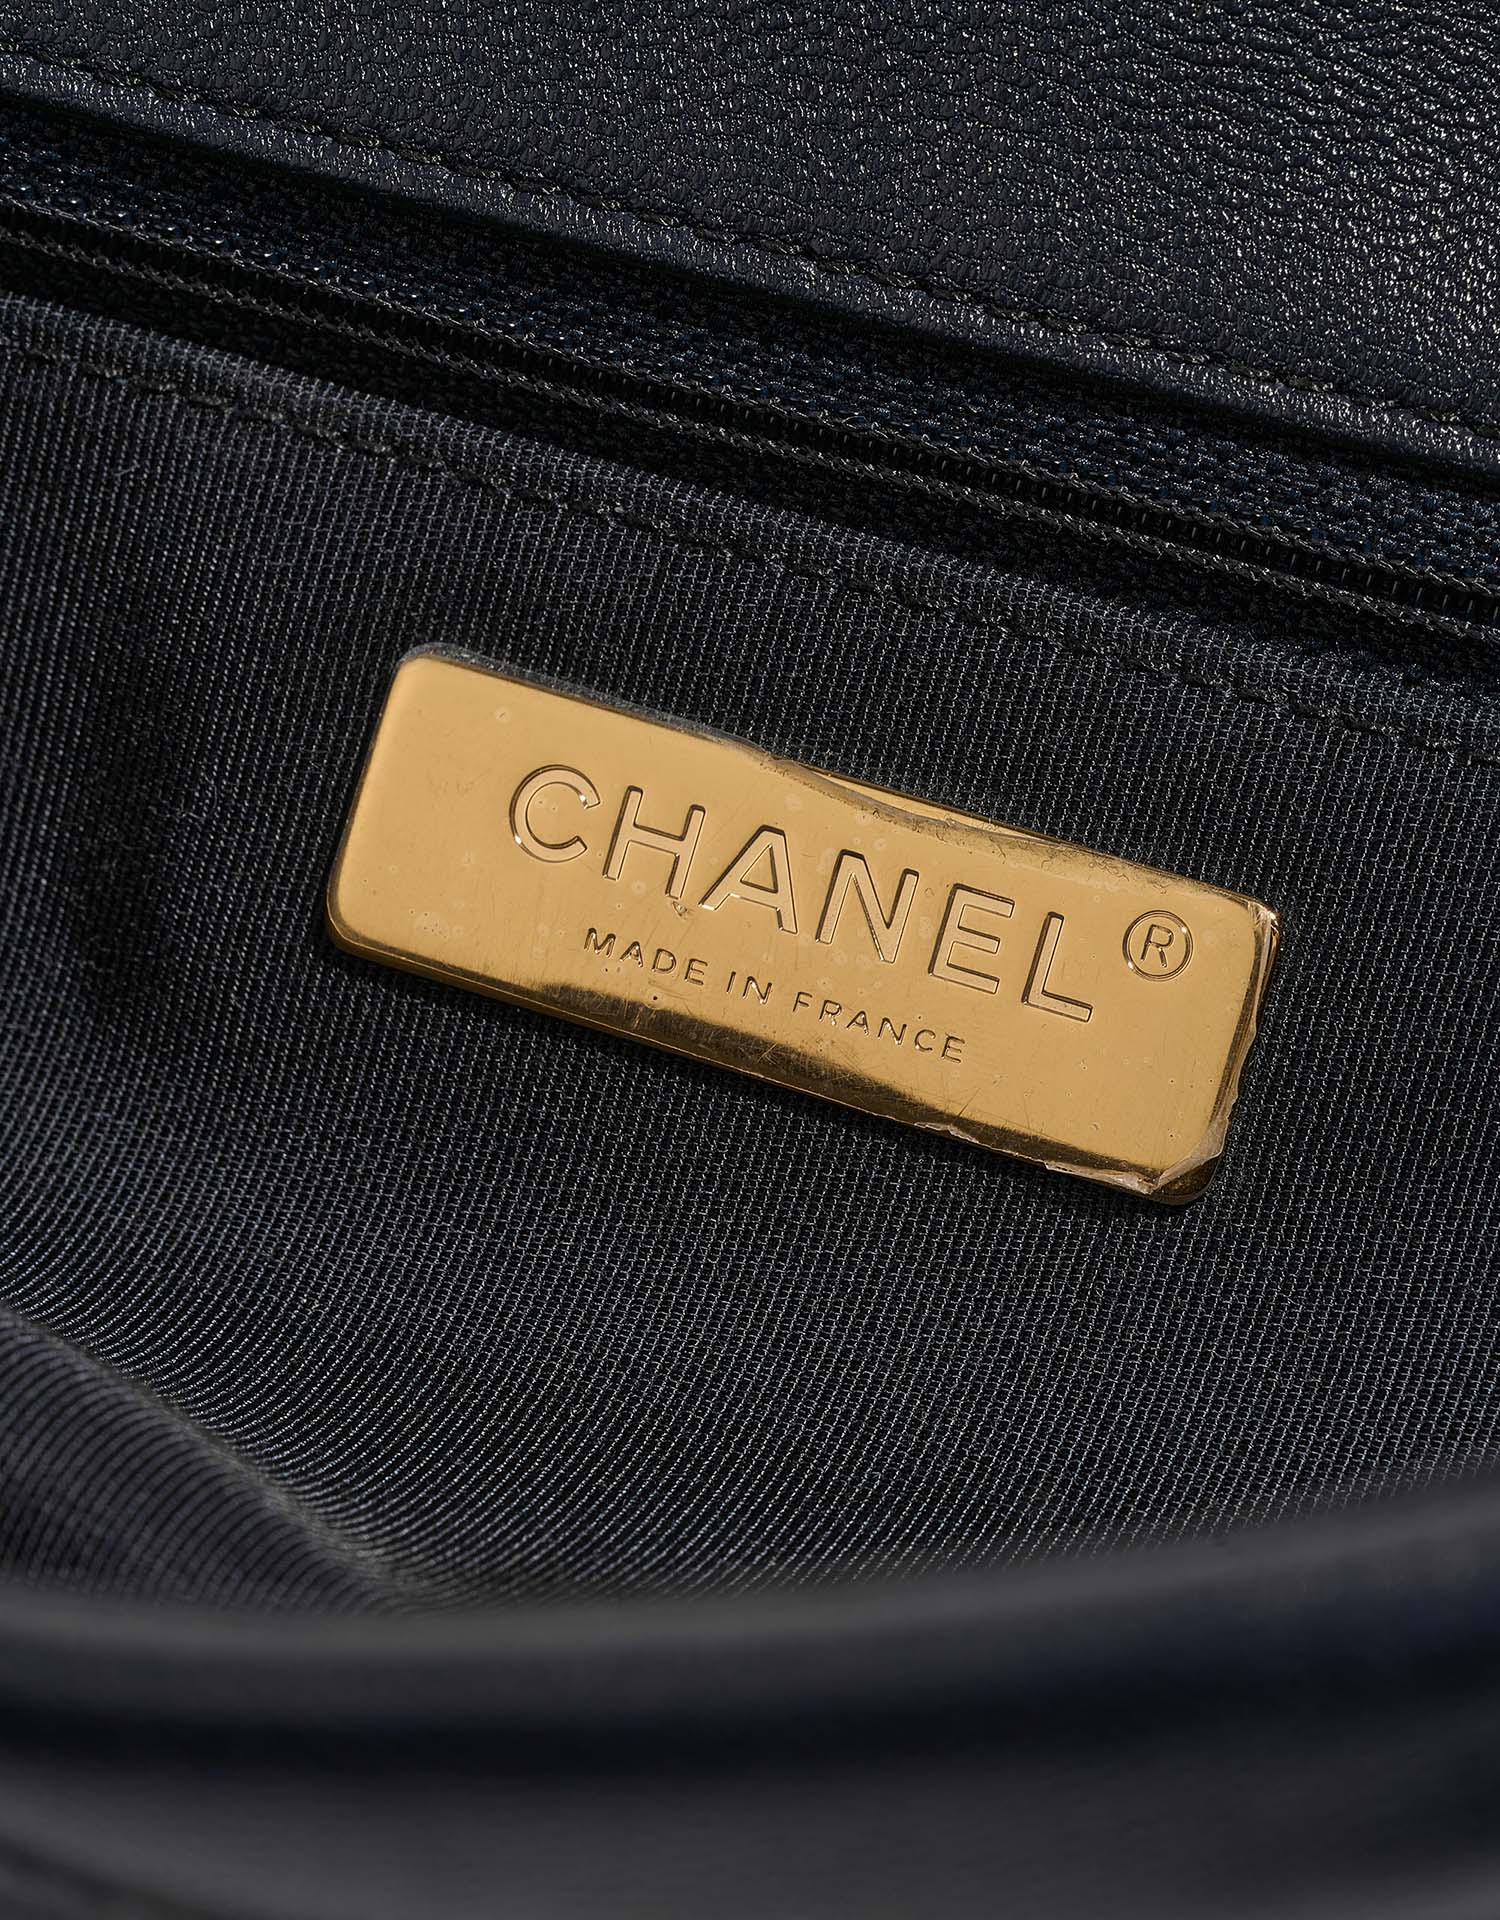 Chanel 19 Large Navy Logo | Verkaufen Sie Ihre Designer-Tasche auf Saclab.com